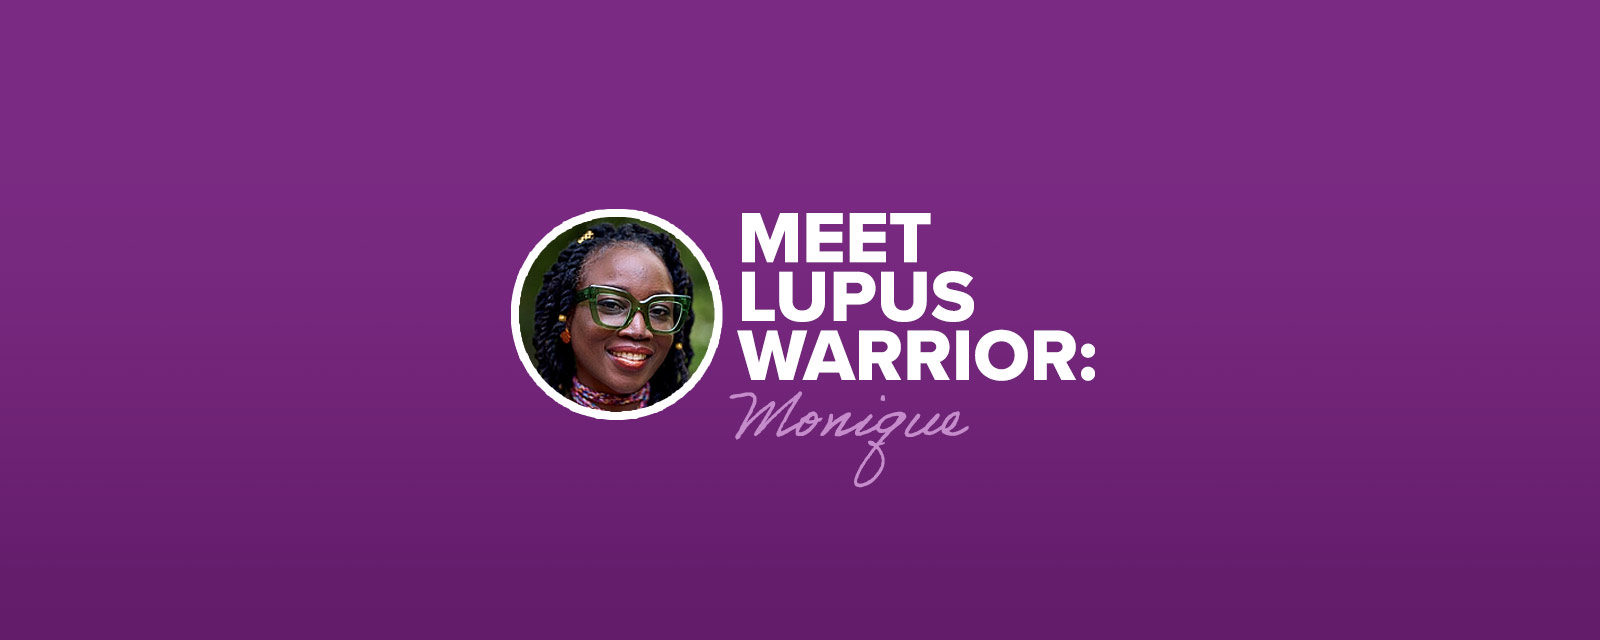 Meet Lupus Warrior: Monique